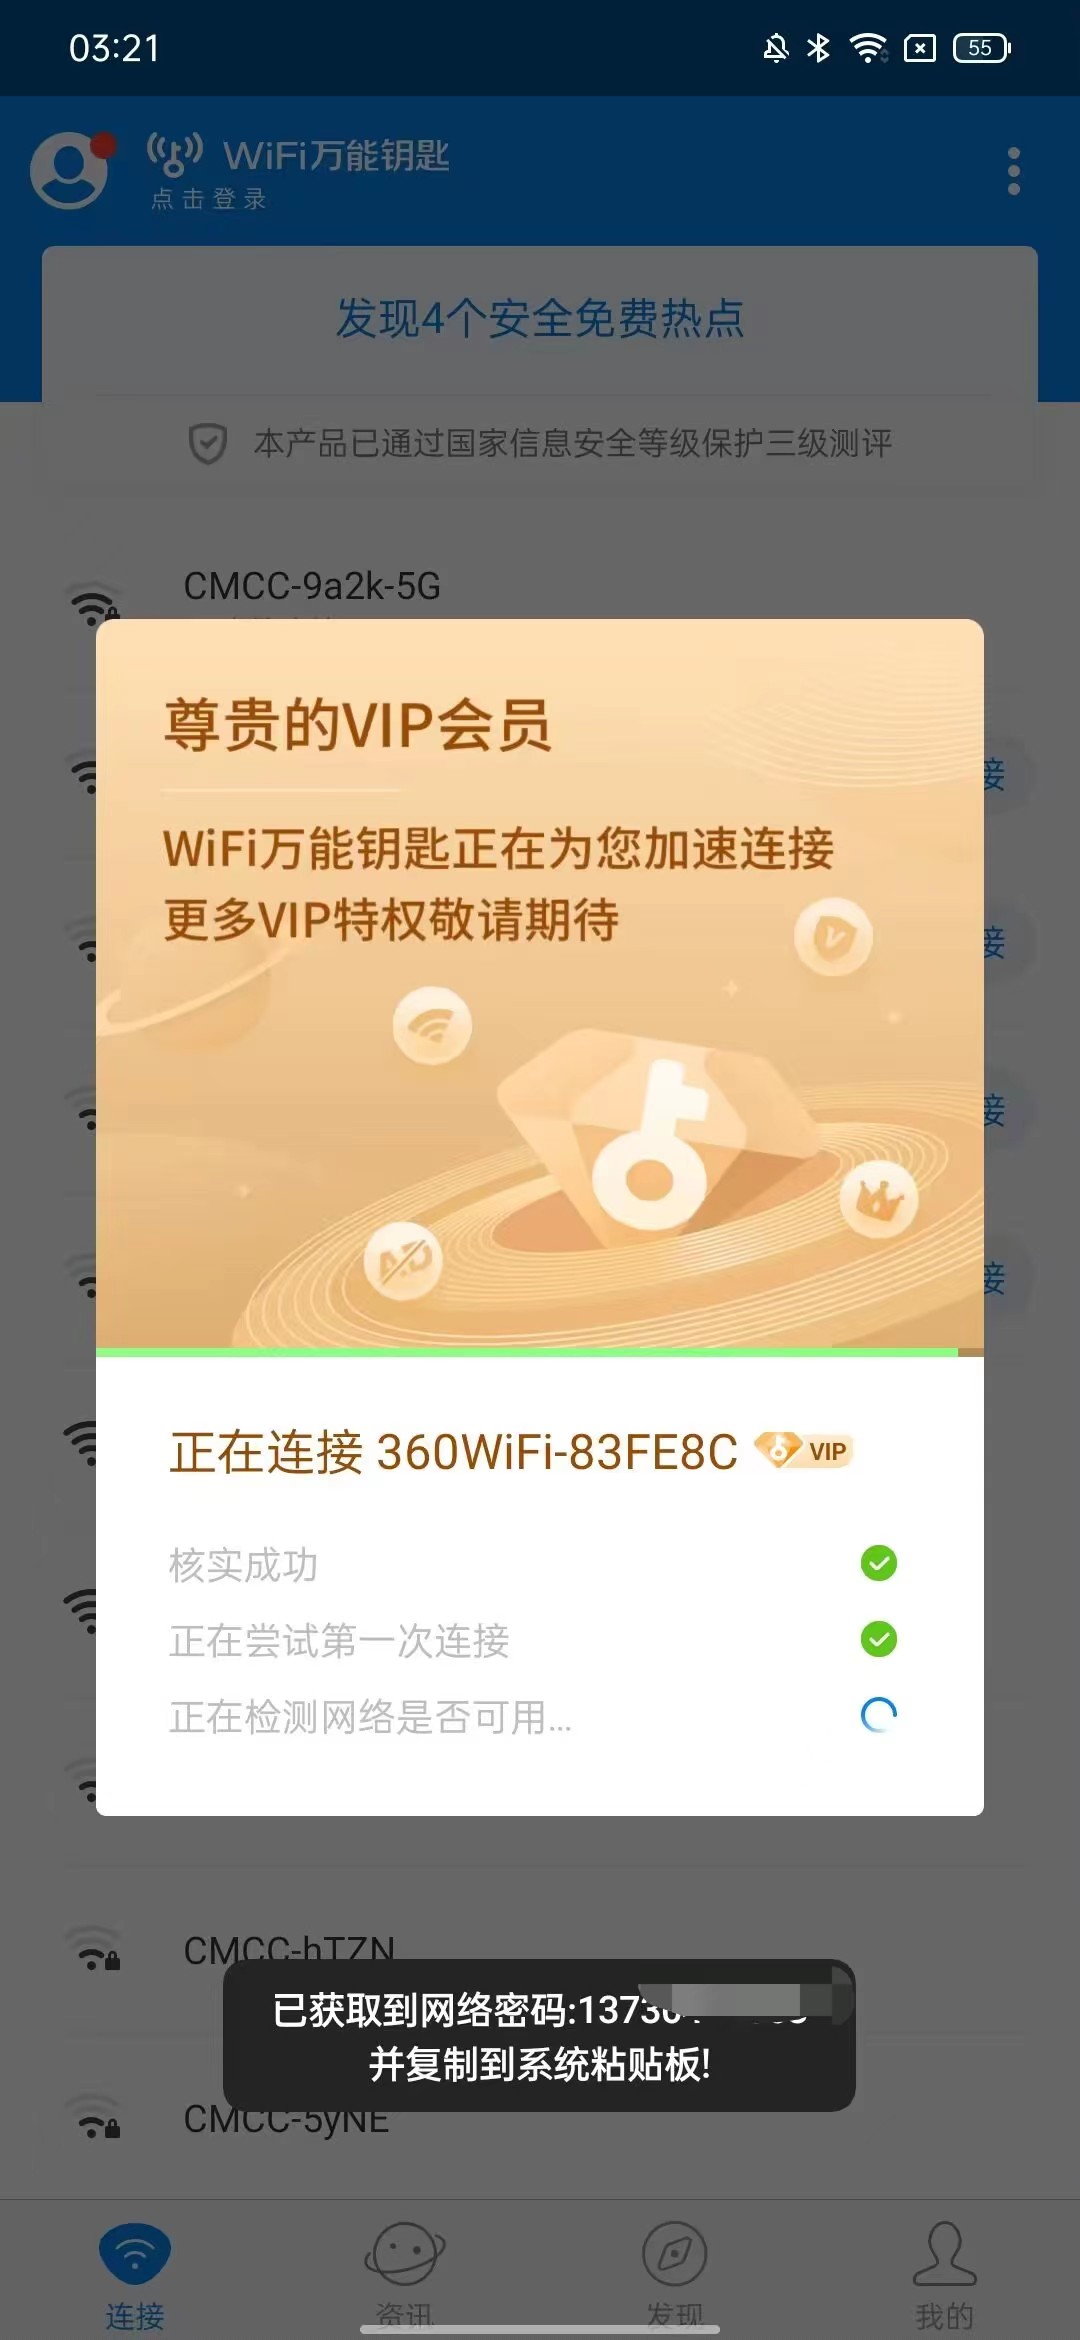 WIFI万能钥匙修复版去广告解锁SVIP 屠城辅助网www.tcfz1.com1850